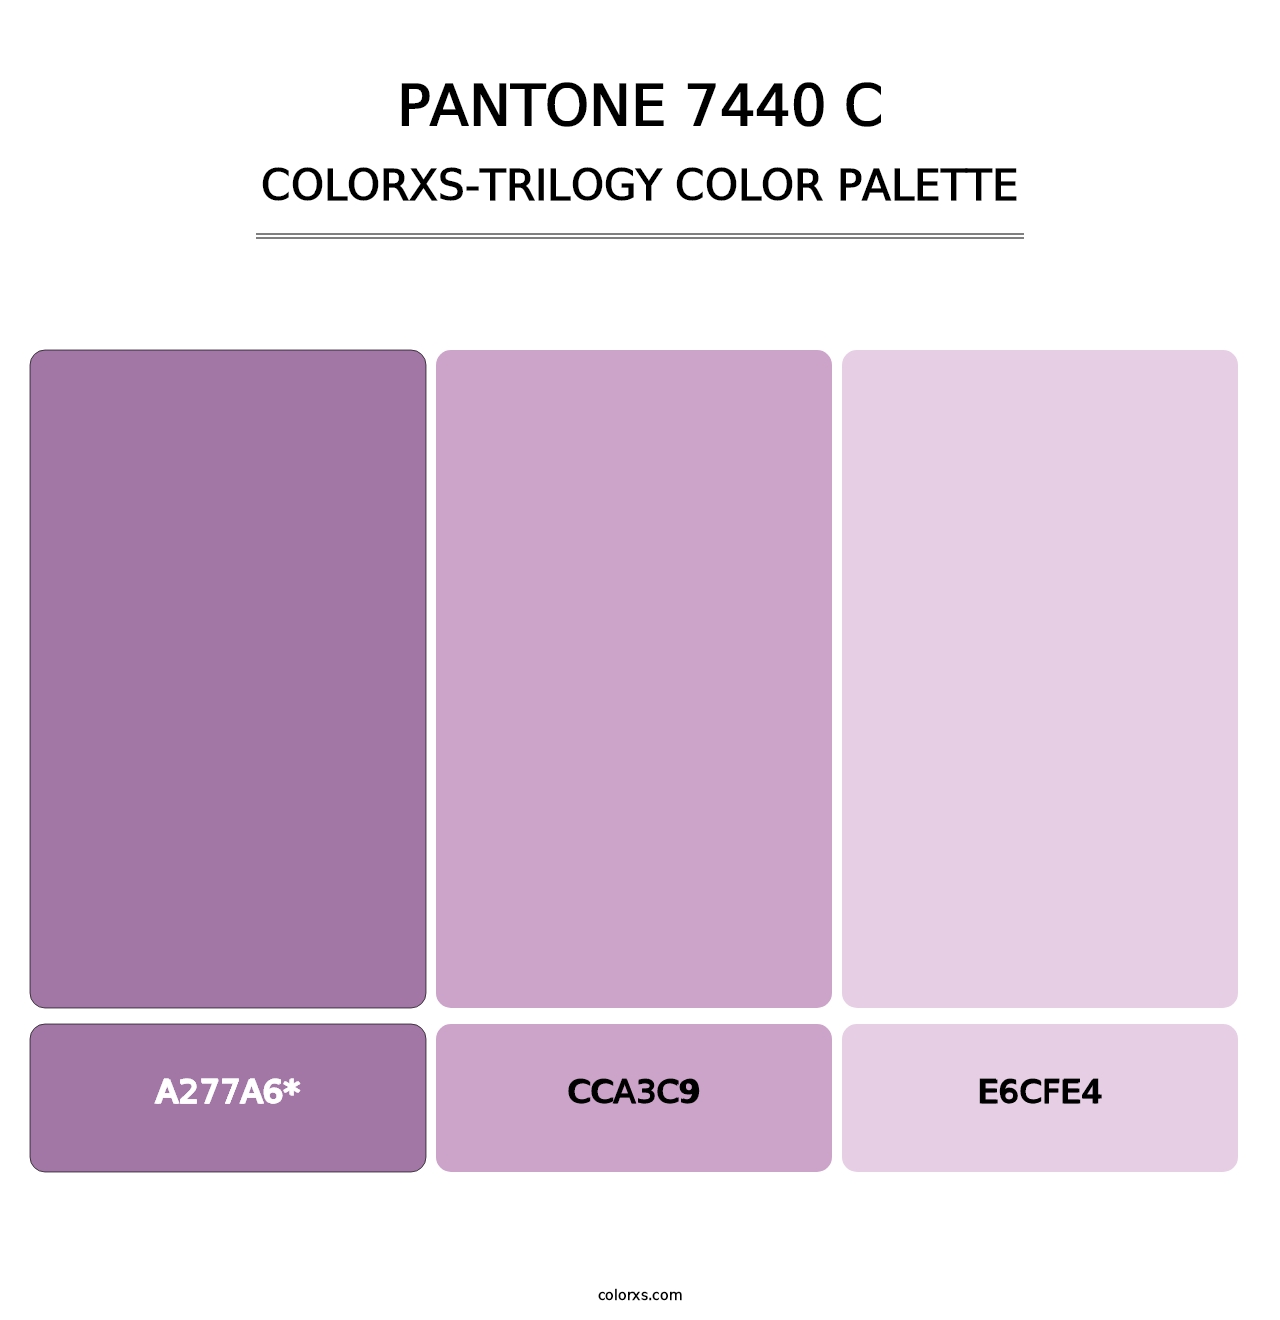 PANTONE 7440 C - Colorxs Trilogy Palette